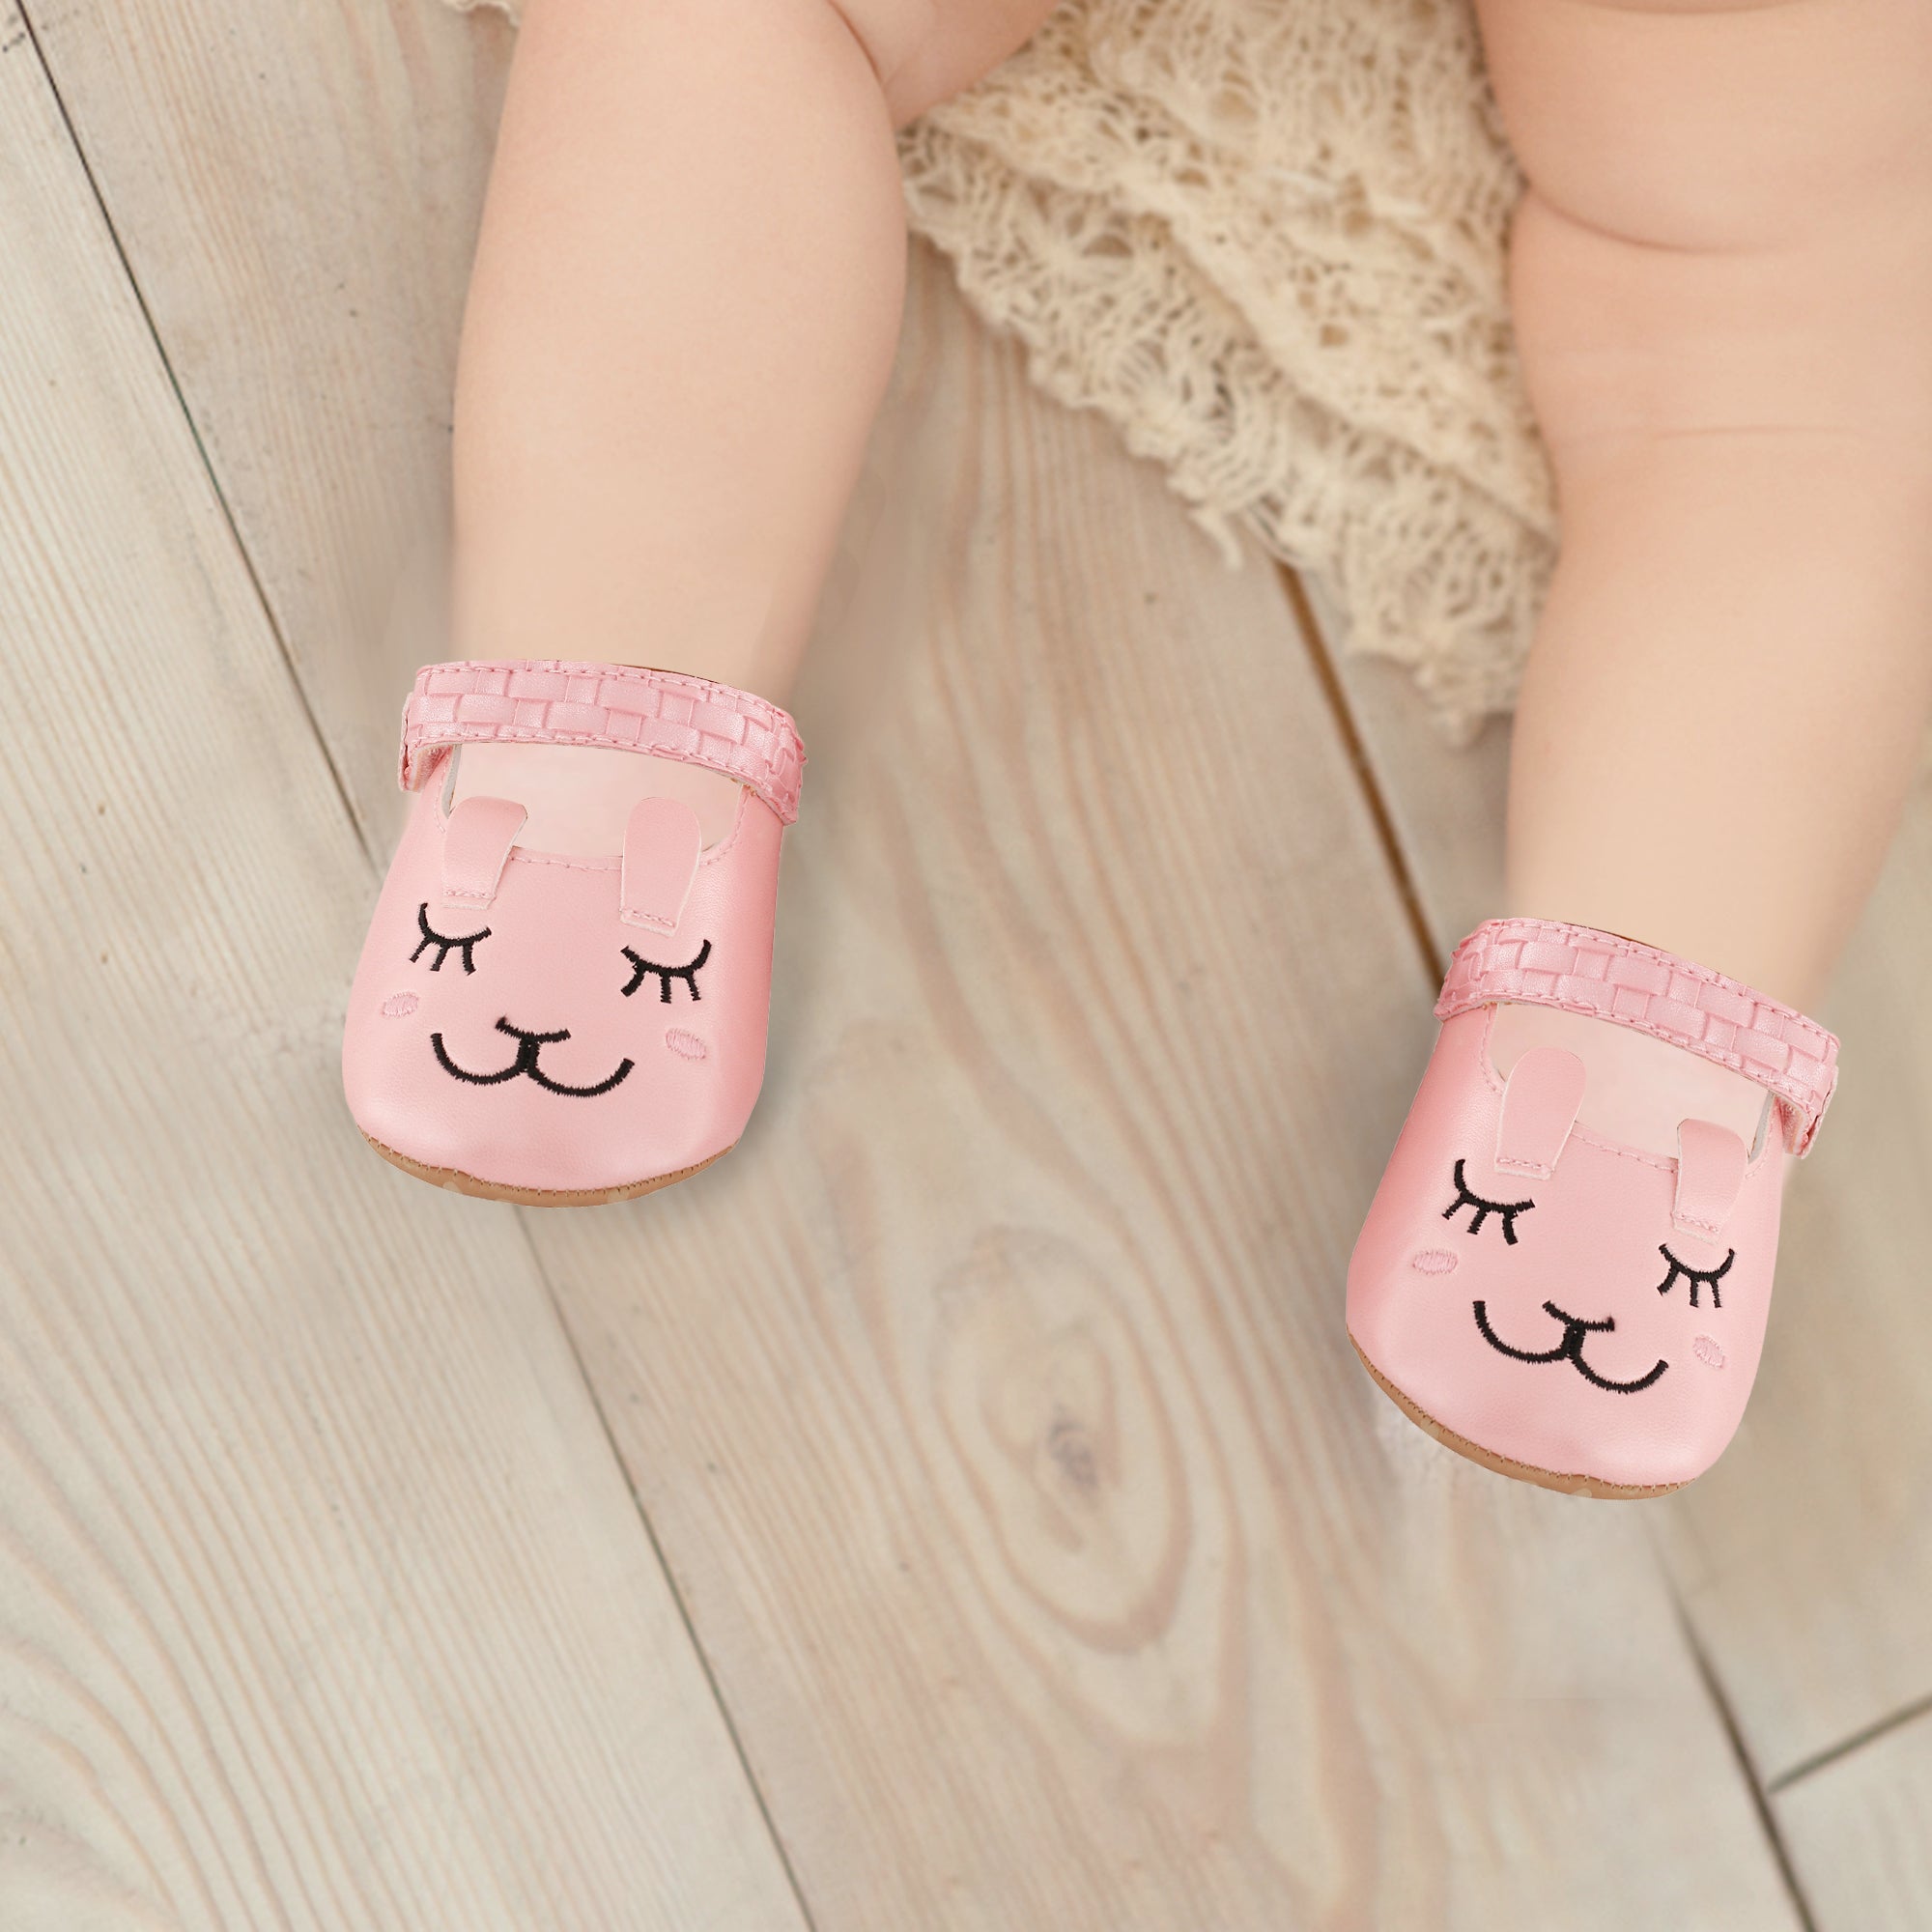 Blushing Kitten Pink Party Booties - Baby Moo